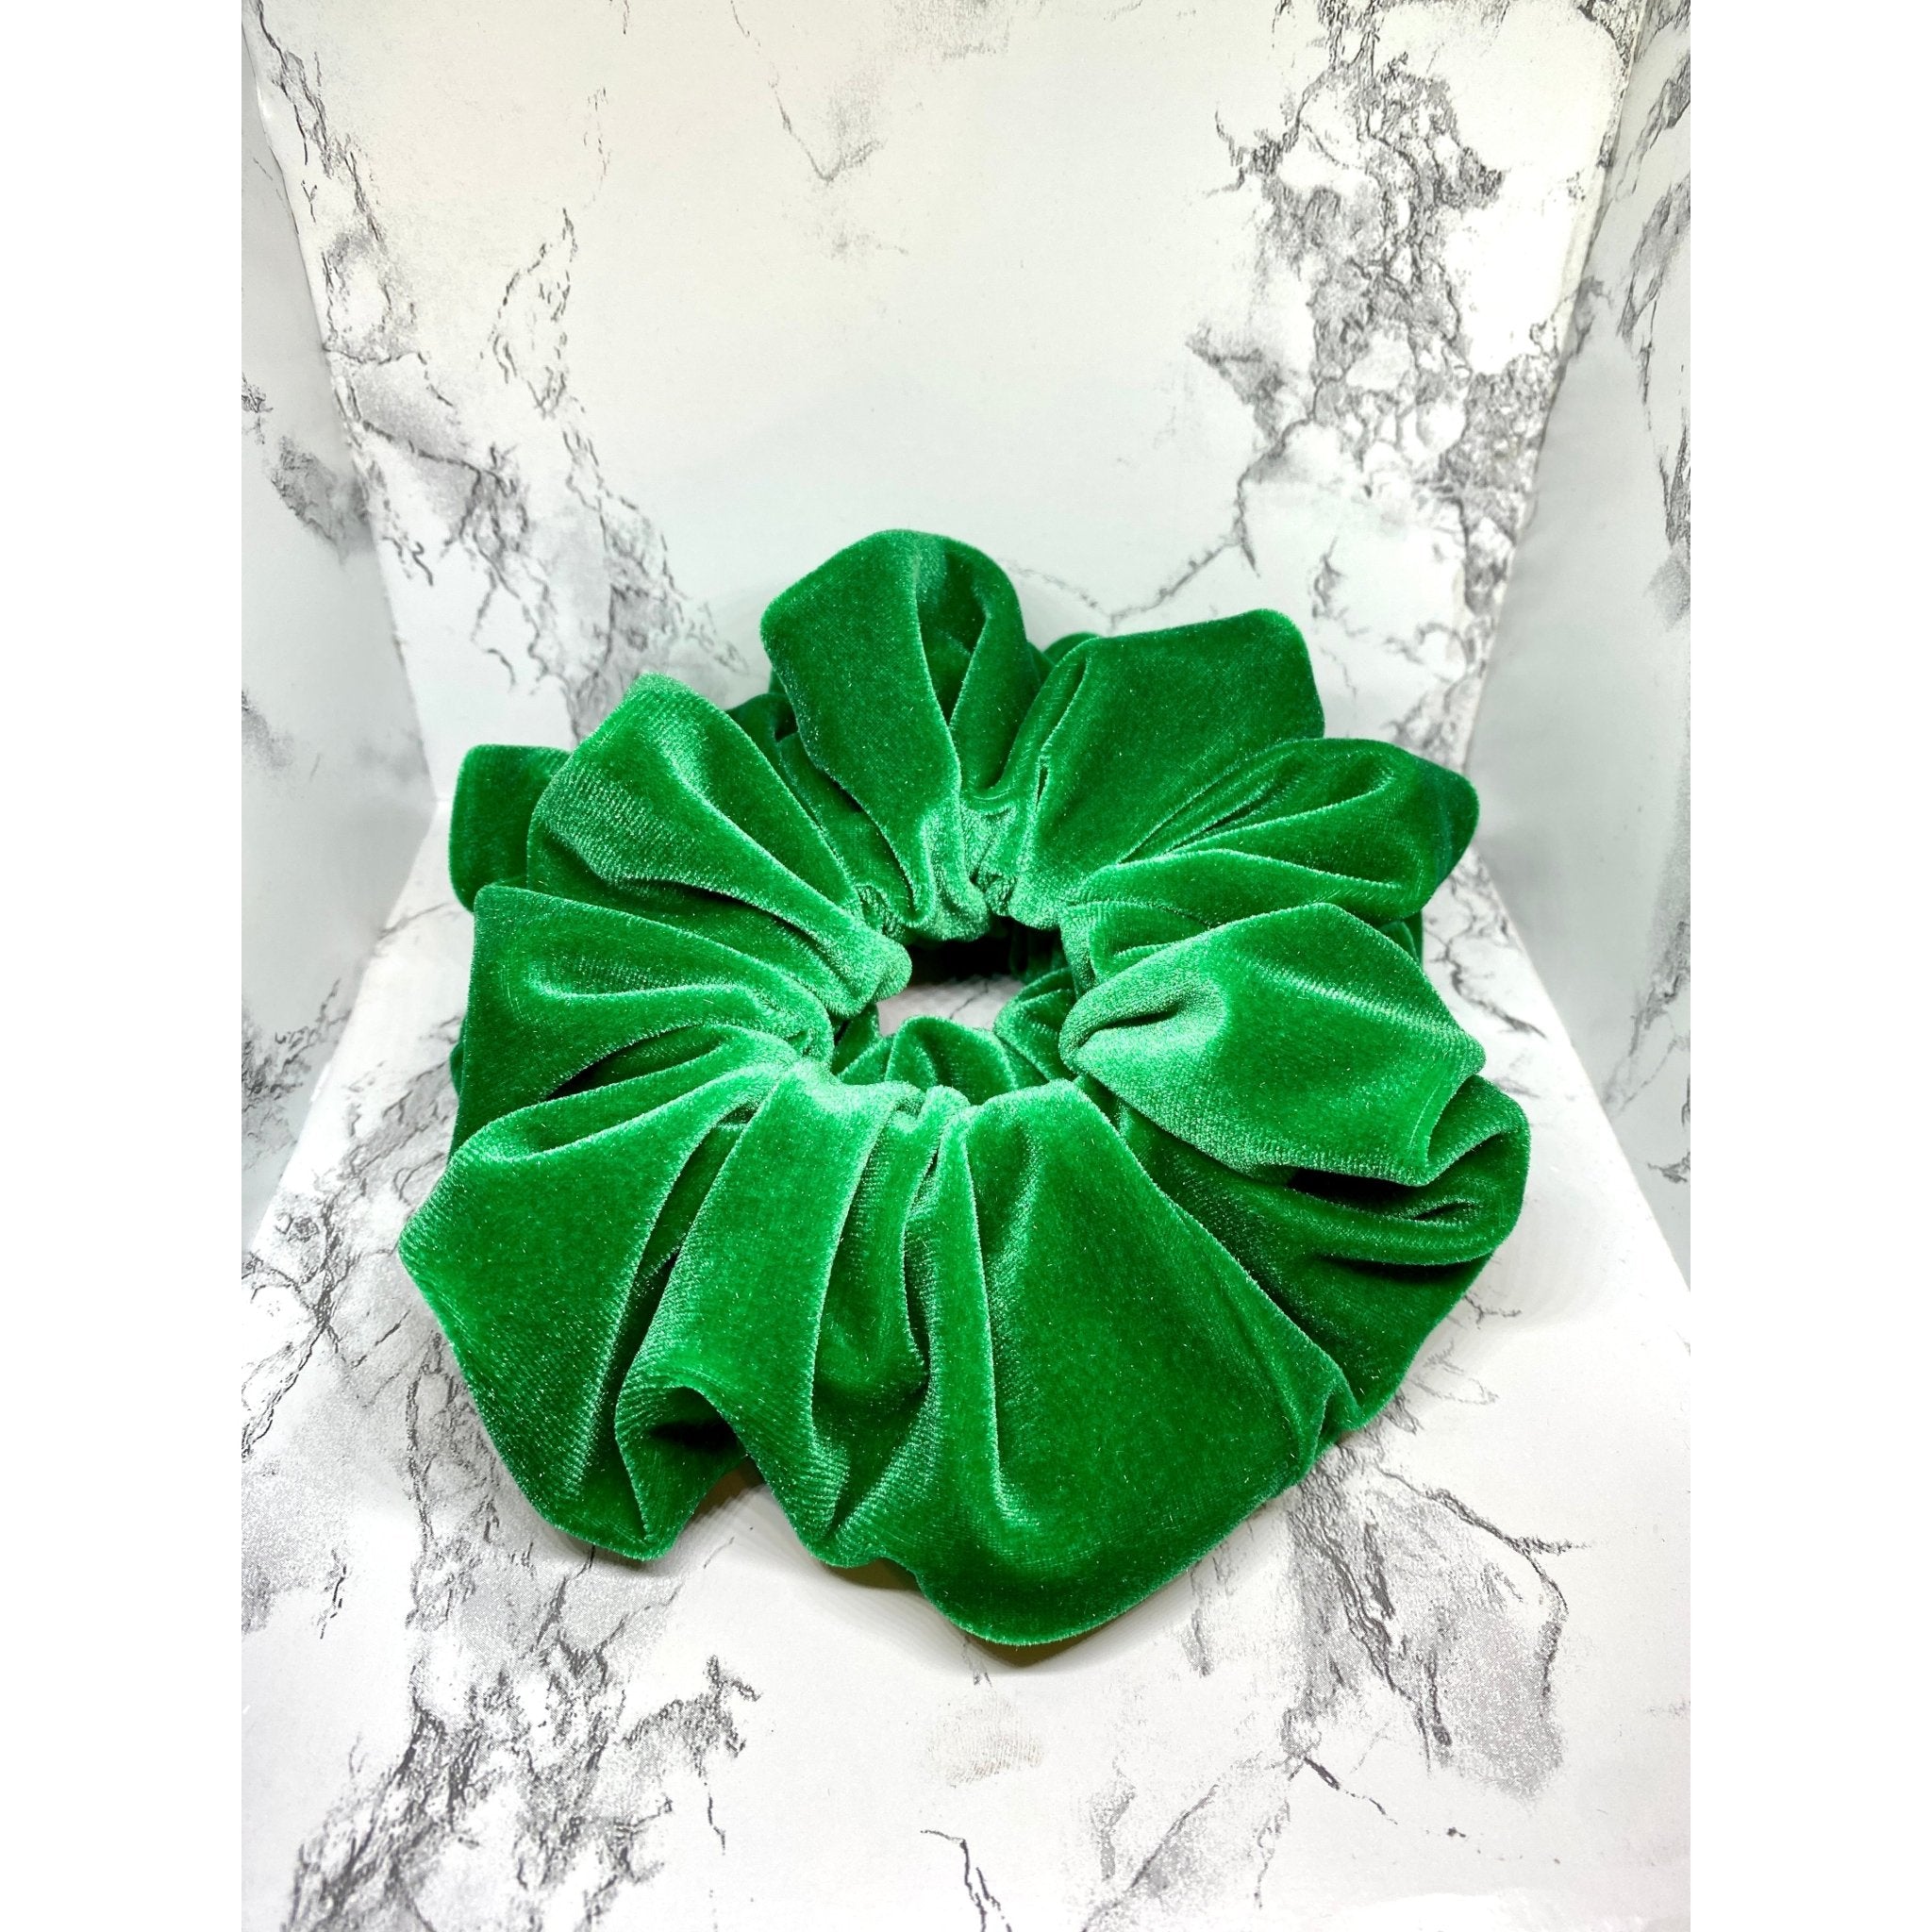 Green Velvet Scrunchie